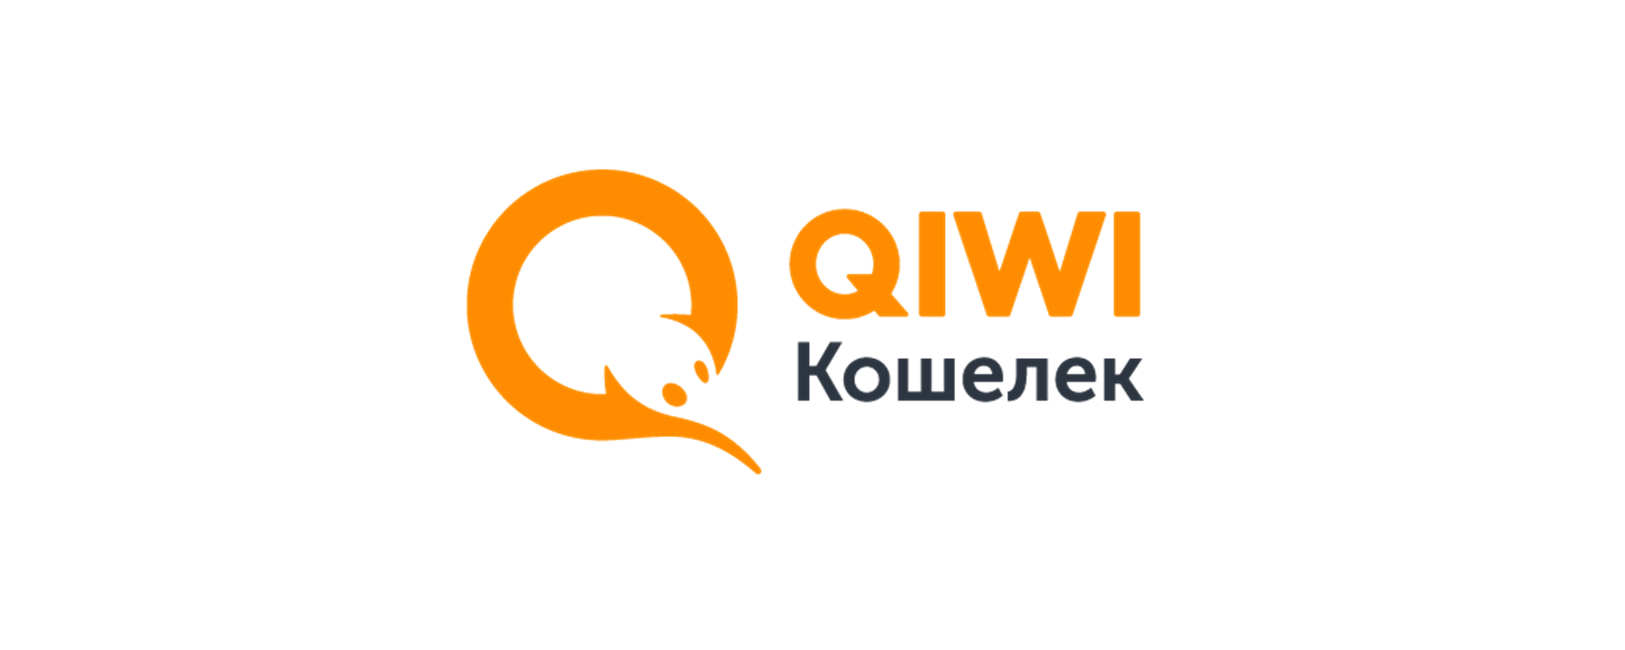 Электронный кошелек qiwi. QIWI кошелек. Картинки QIWI кошелек. Логотип киви кошелек. Электронная платежная система QIWI.